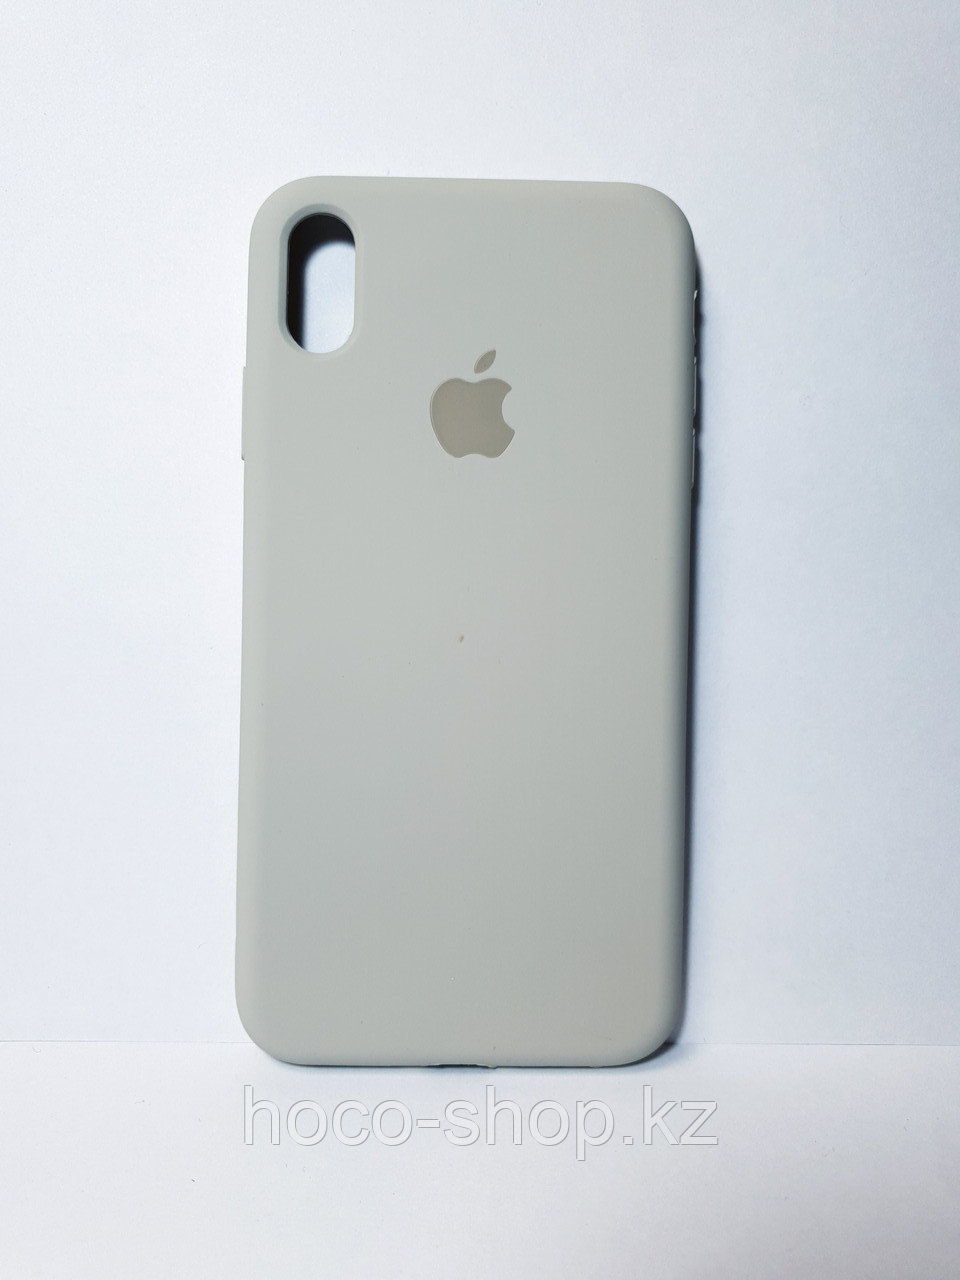 Защитный чехол для iPhone Xs Max Soft Touch силиконовый, серый